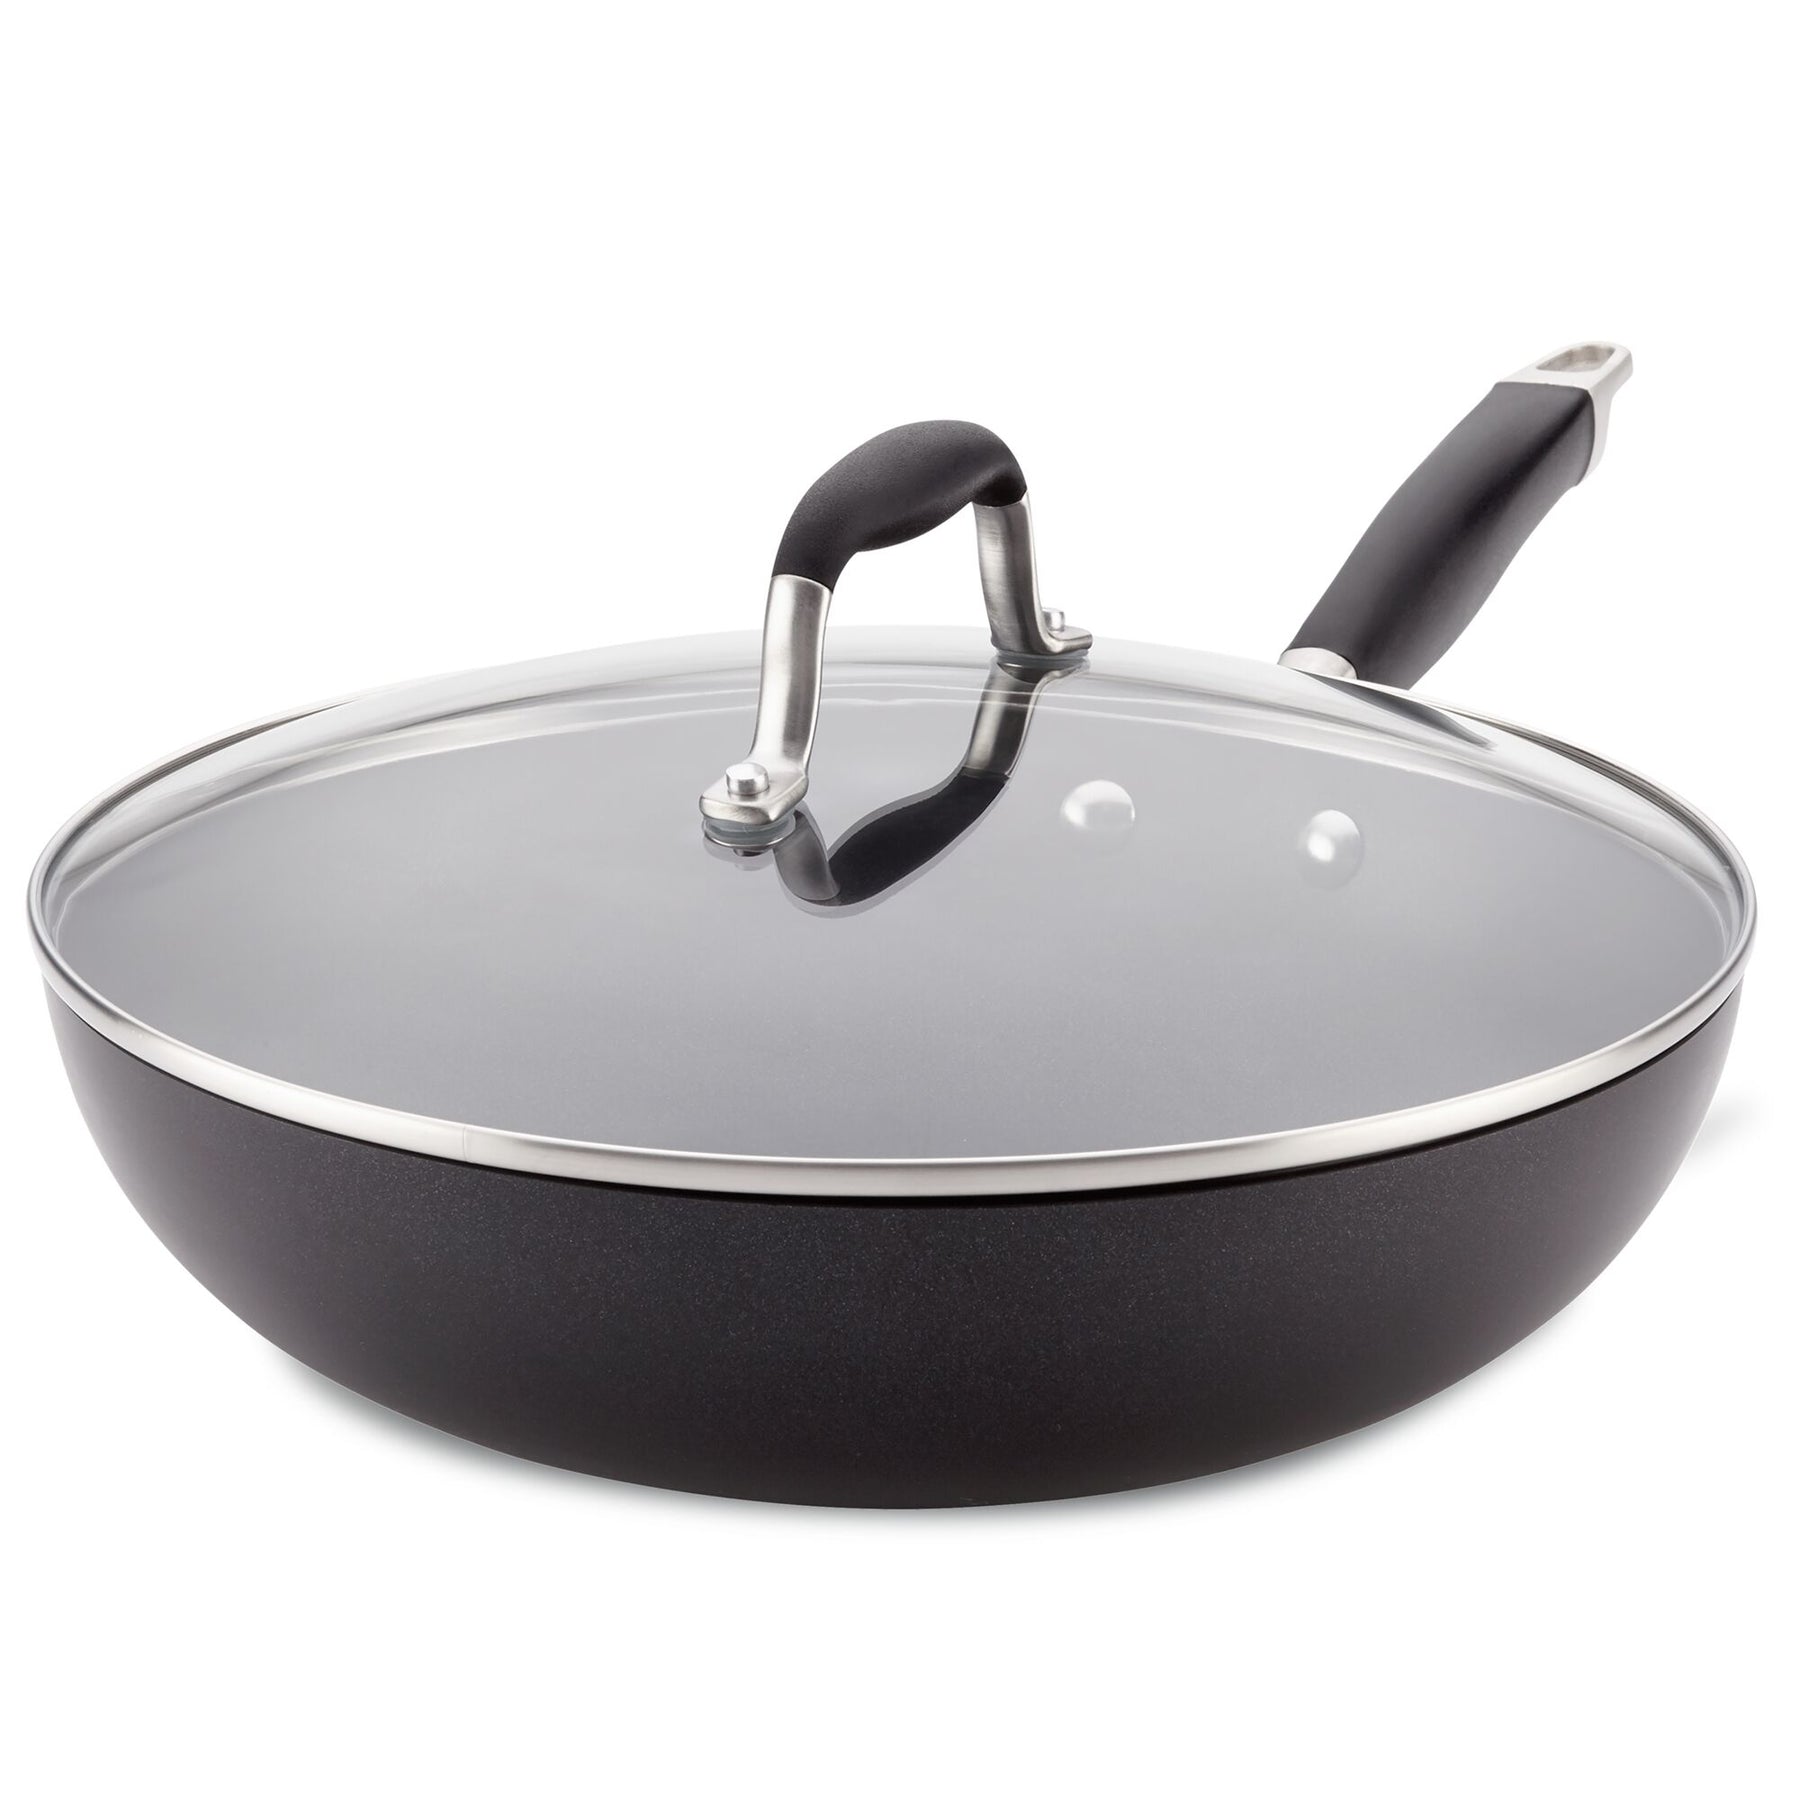 12-Inch Frying Pan – Anolon